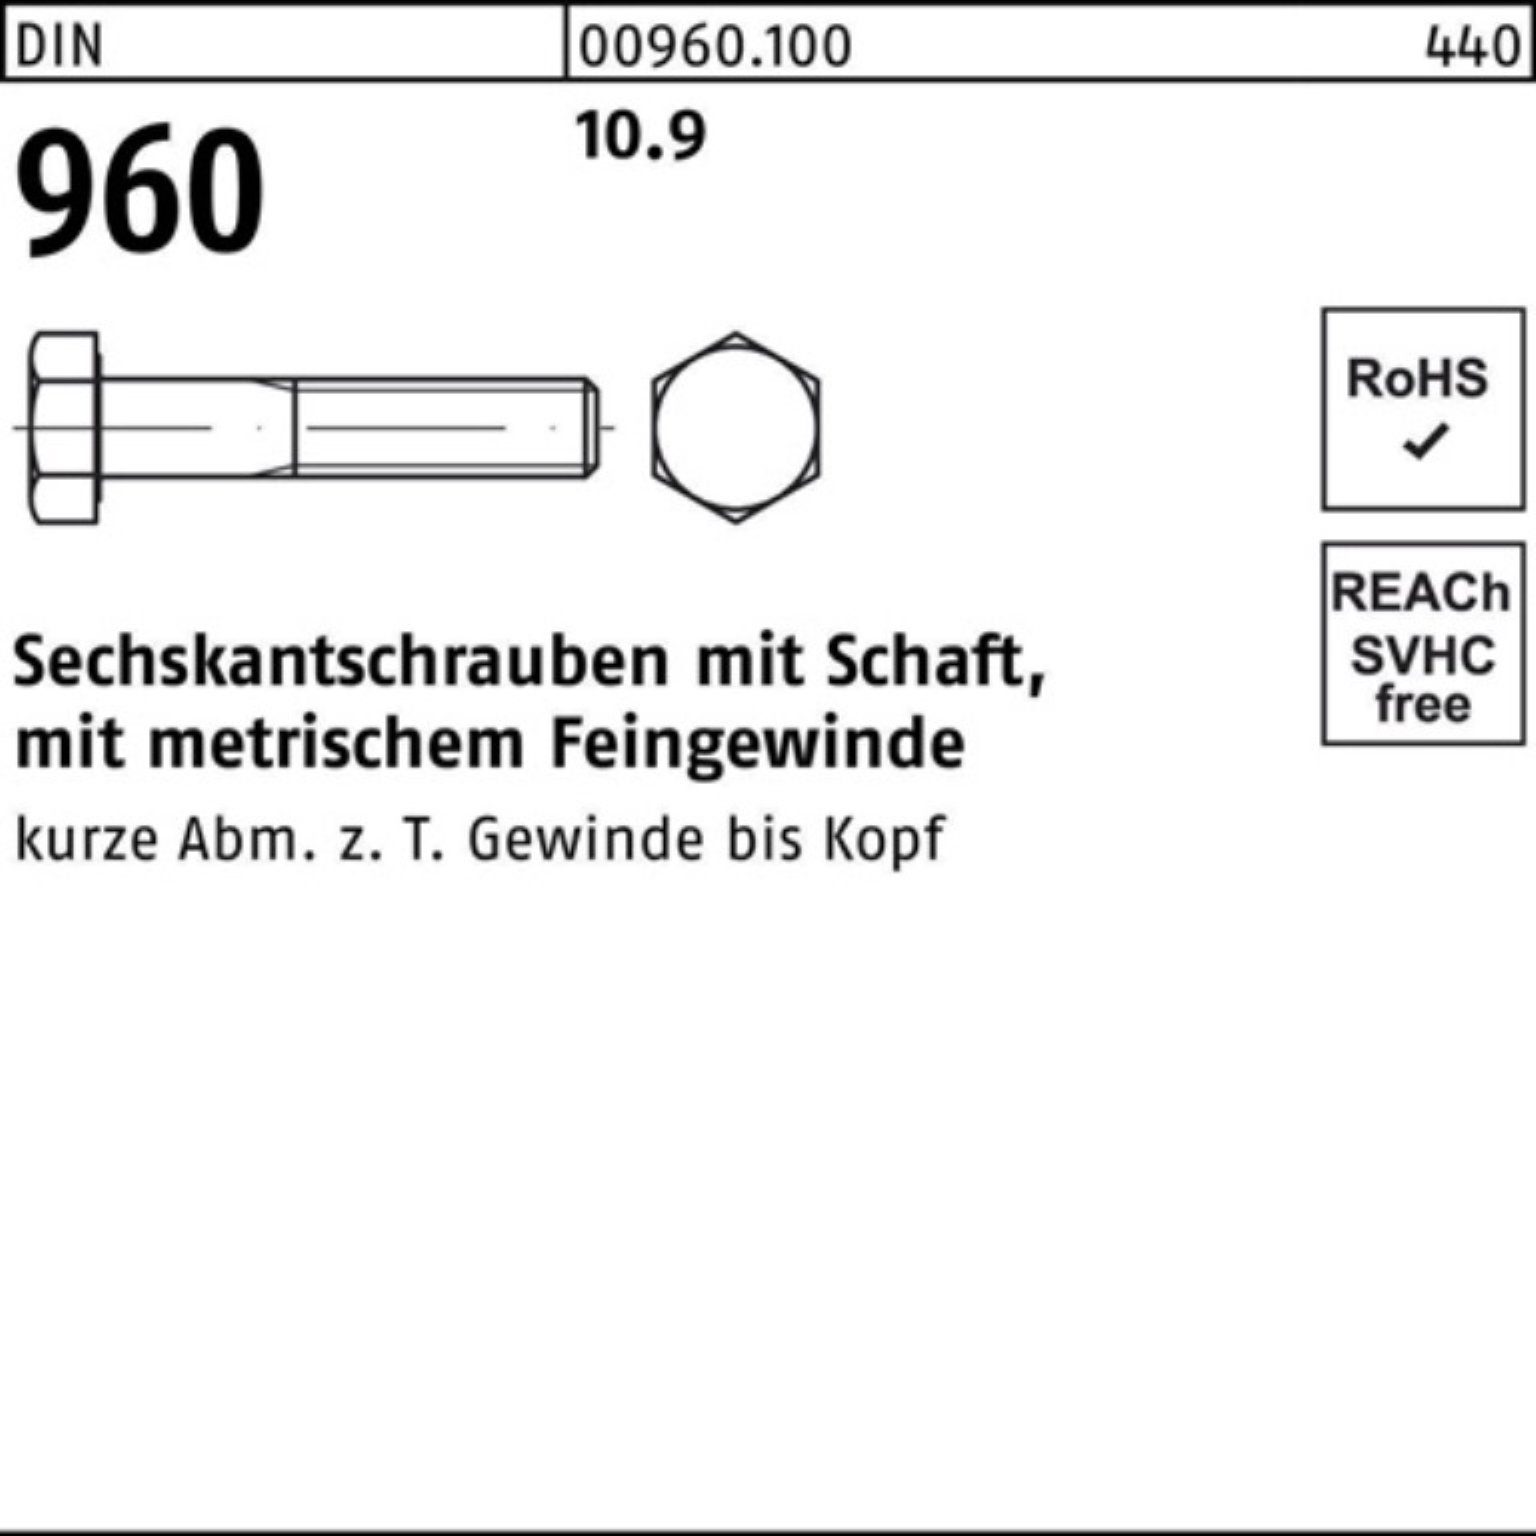 DIN Reyher Sechskantschraube D 960 Schaft Stück 35 Pack 200er 200 Sechskantschraube 10.9 M8x1x